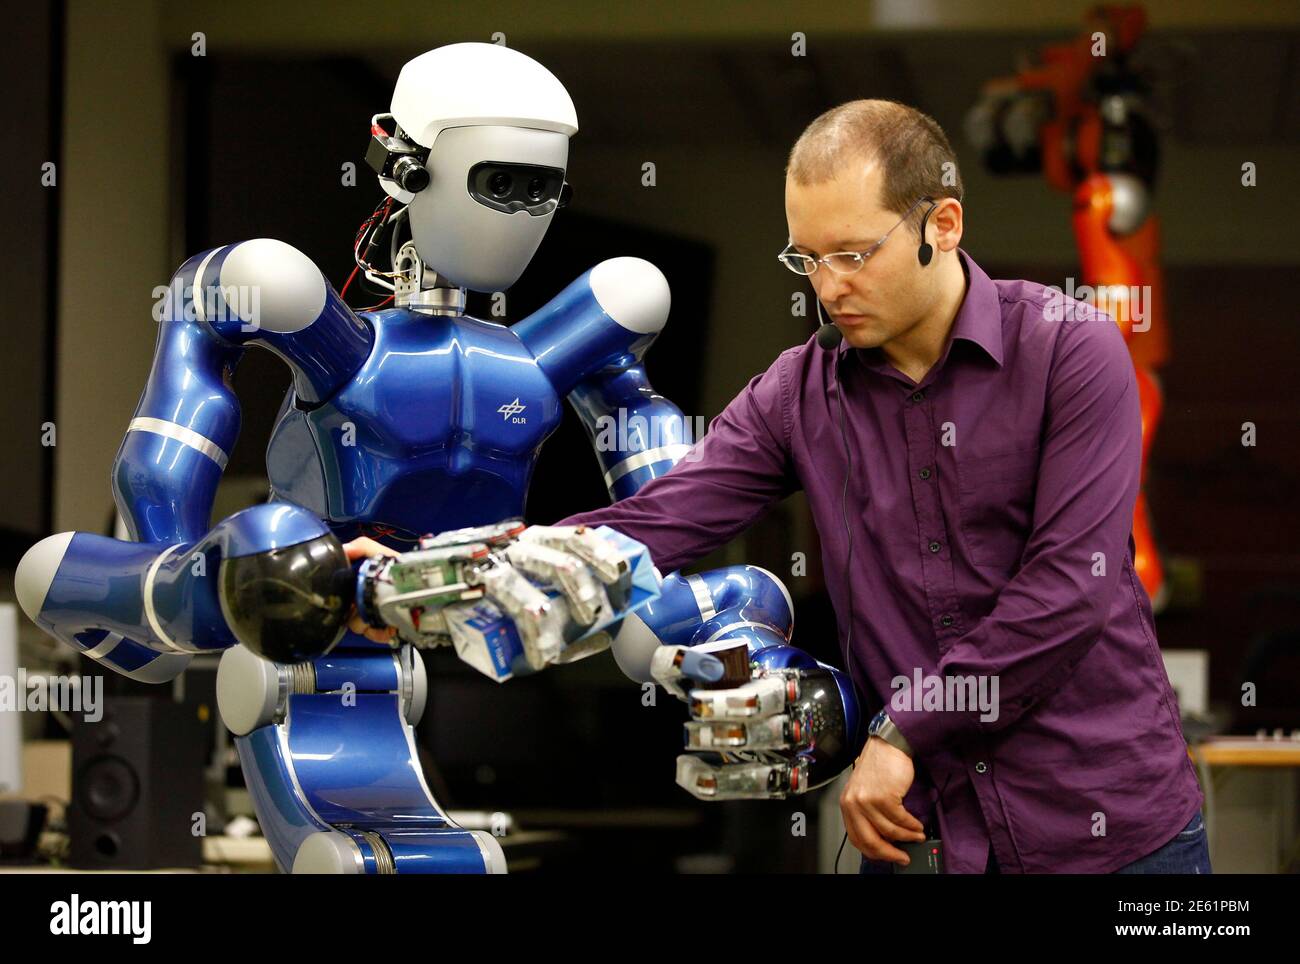 Тема человек и робот. Современные роботы. Роботы ученые. Робототехника. Робототехник профессия.